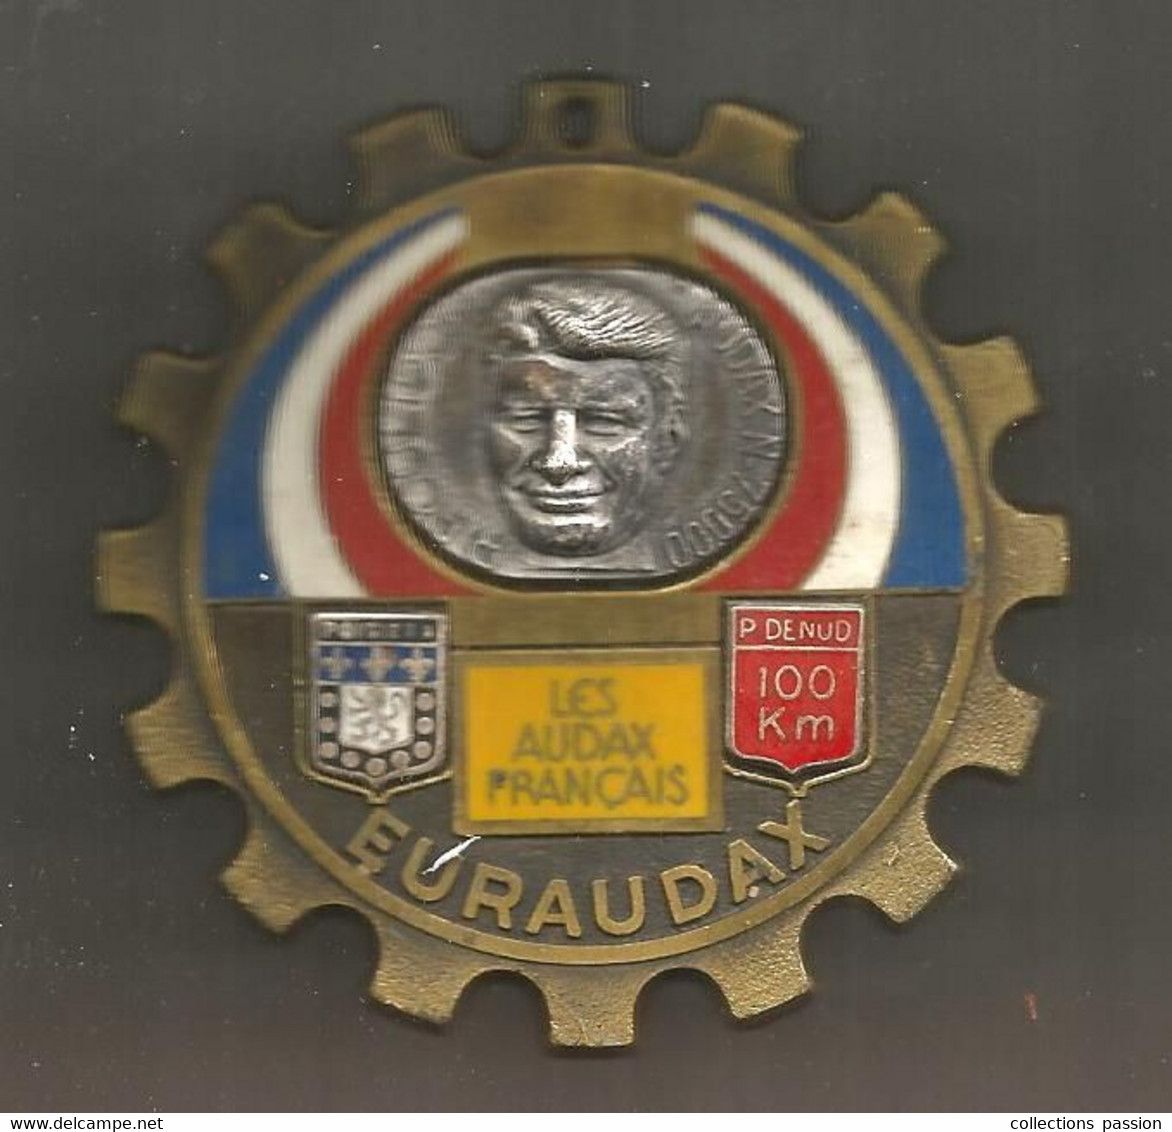 Médaille , Sports , Cyclisme, EURAUDAX , Les AUDAX FRANCAIS, R. Poulidor , 1979 , 72 Gr. , Frais Fr 3.35 - Radsport